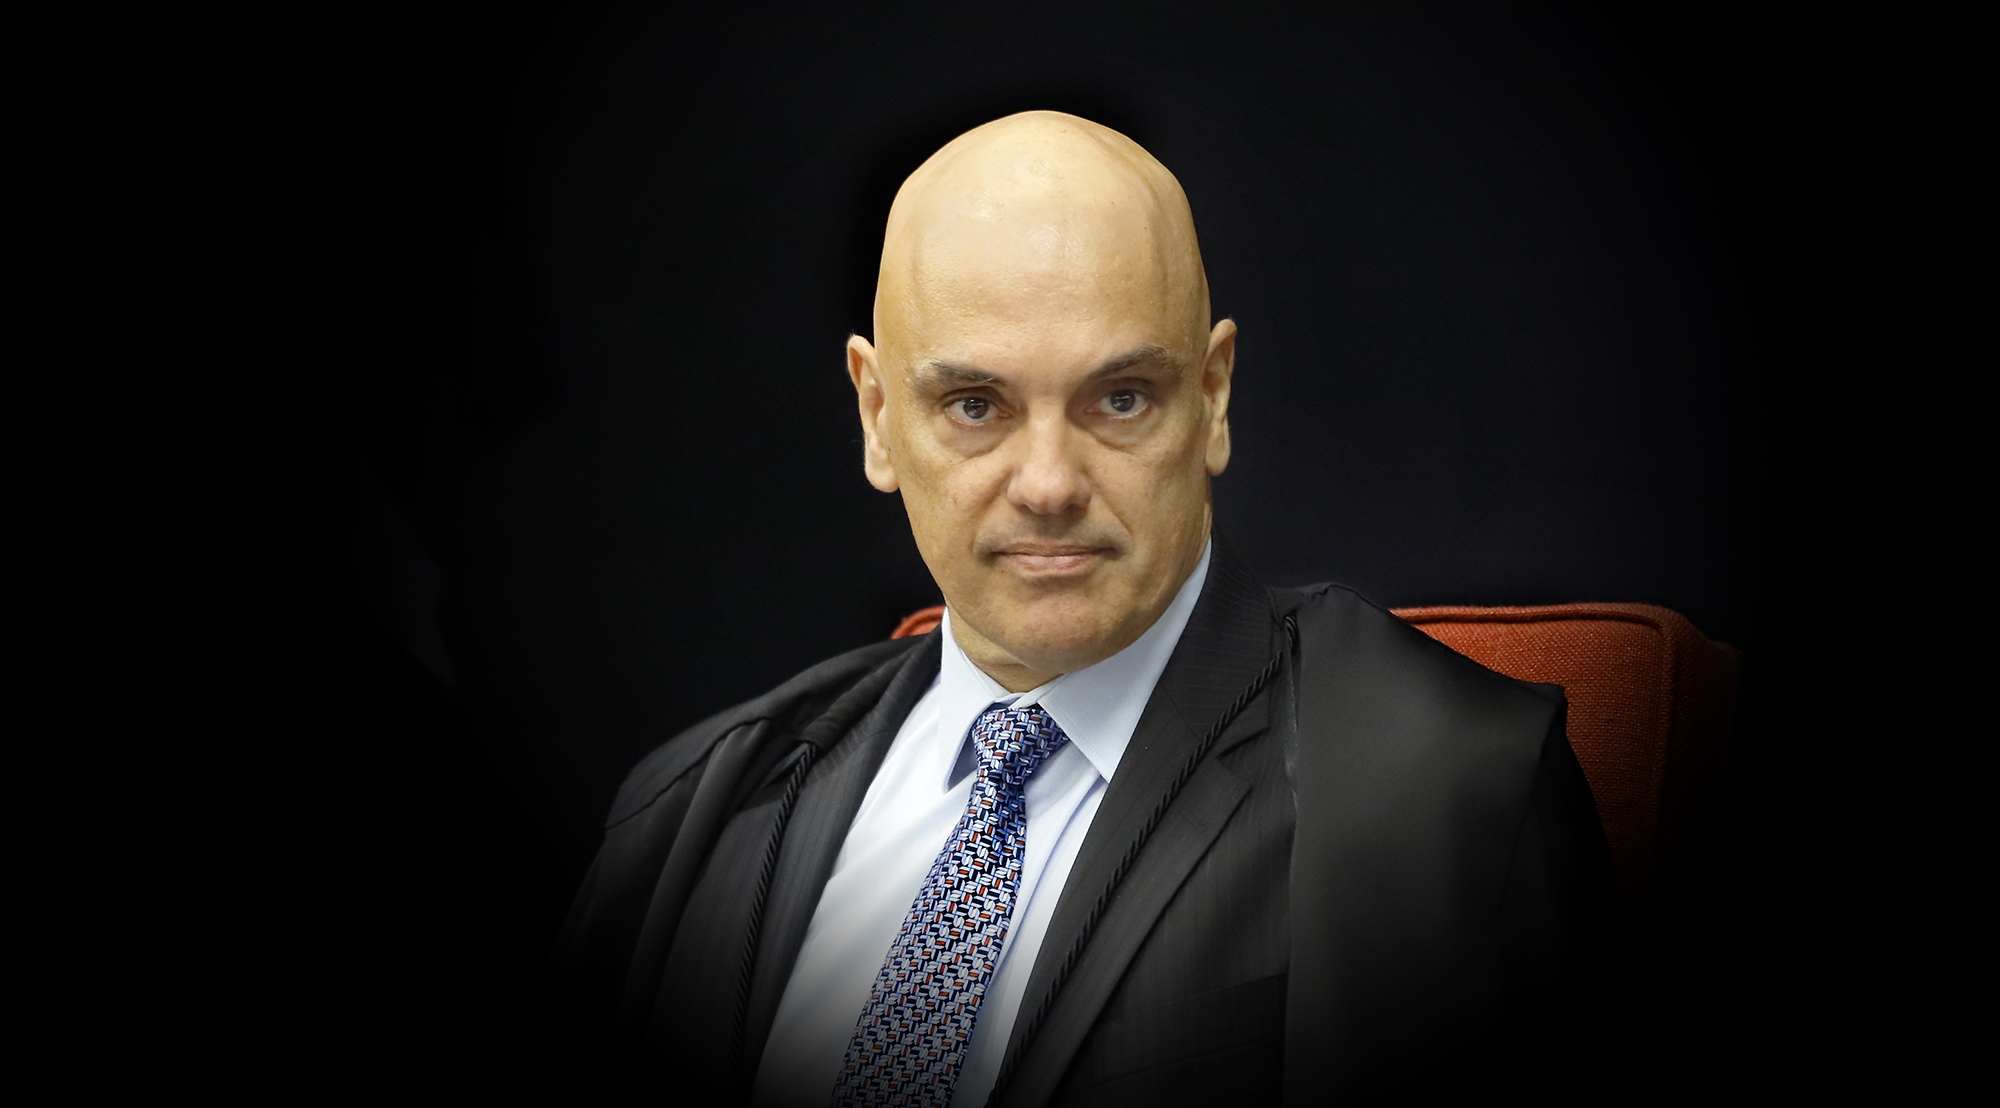 Alexandre de Moraes sinaliza preocupação com bancada conservadora em 2026, diz site 1